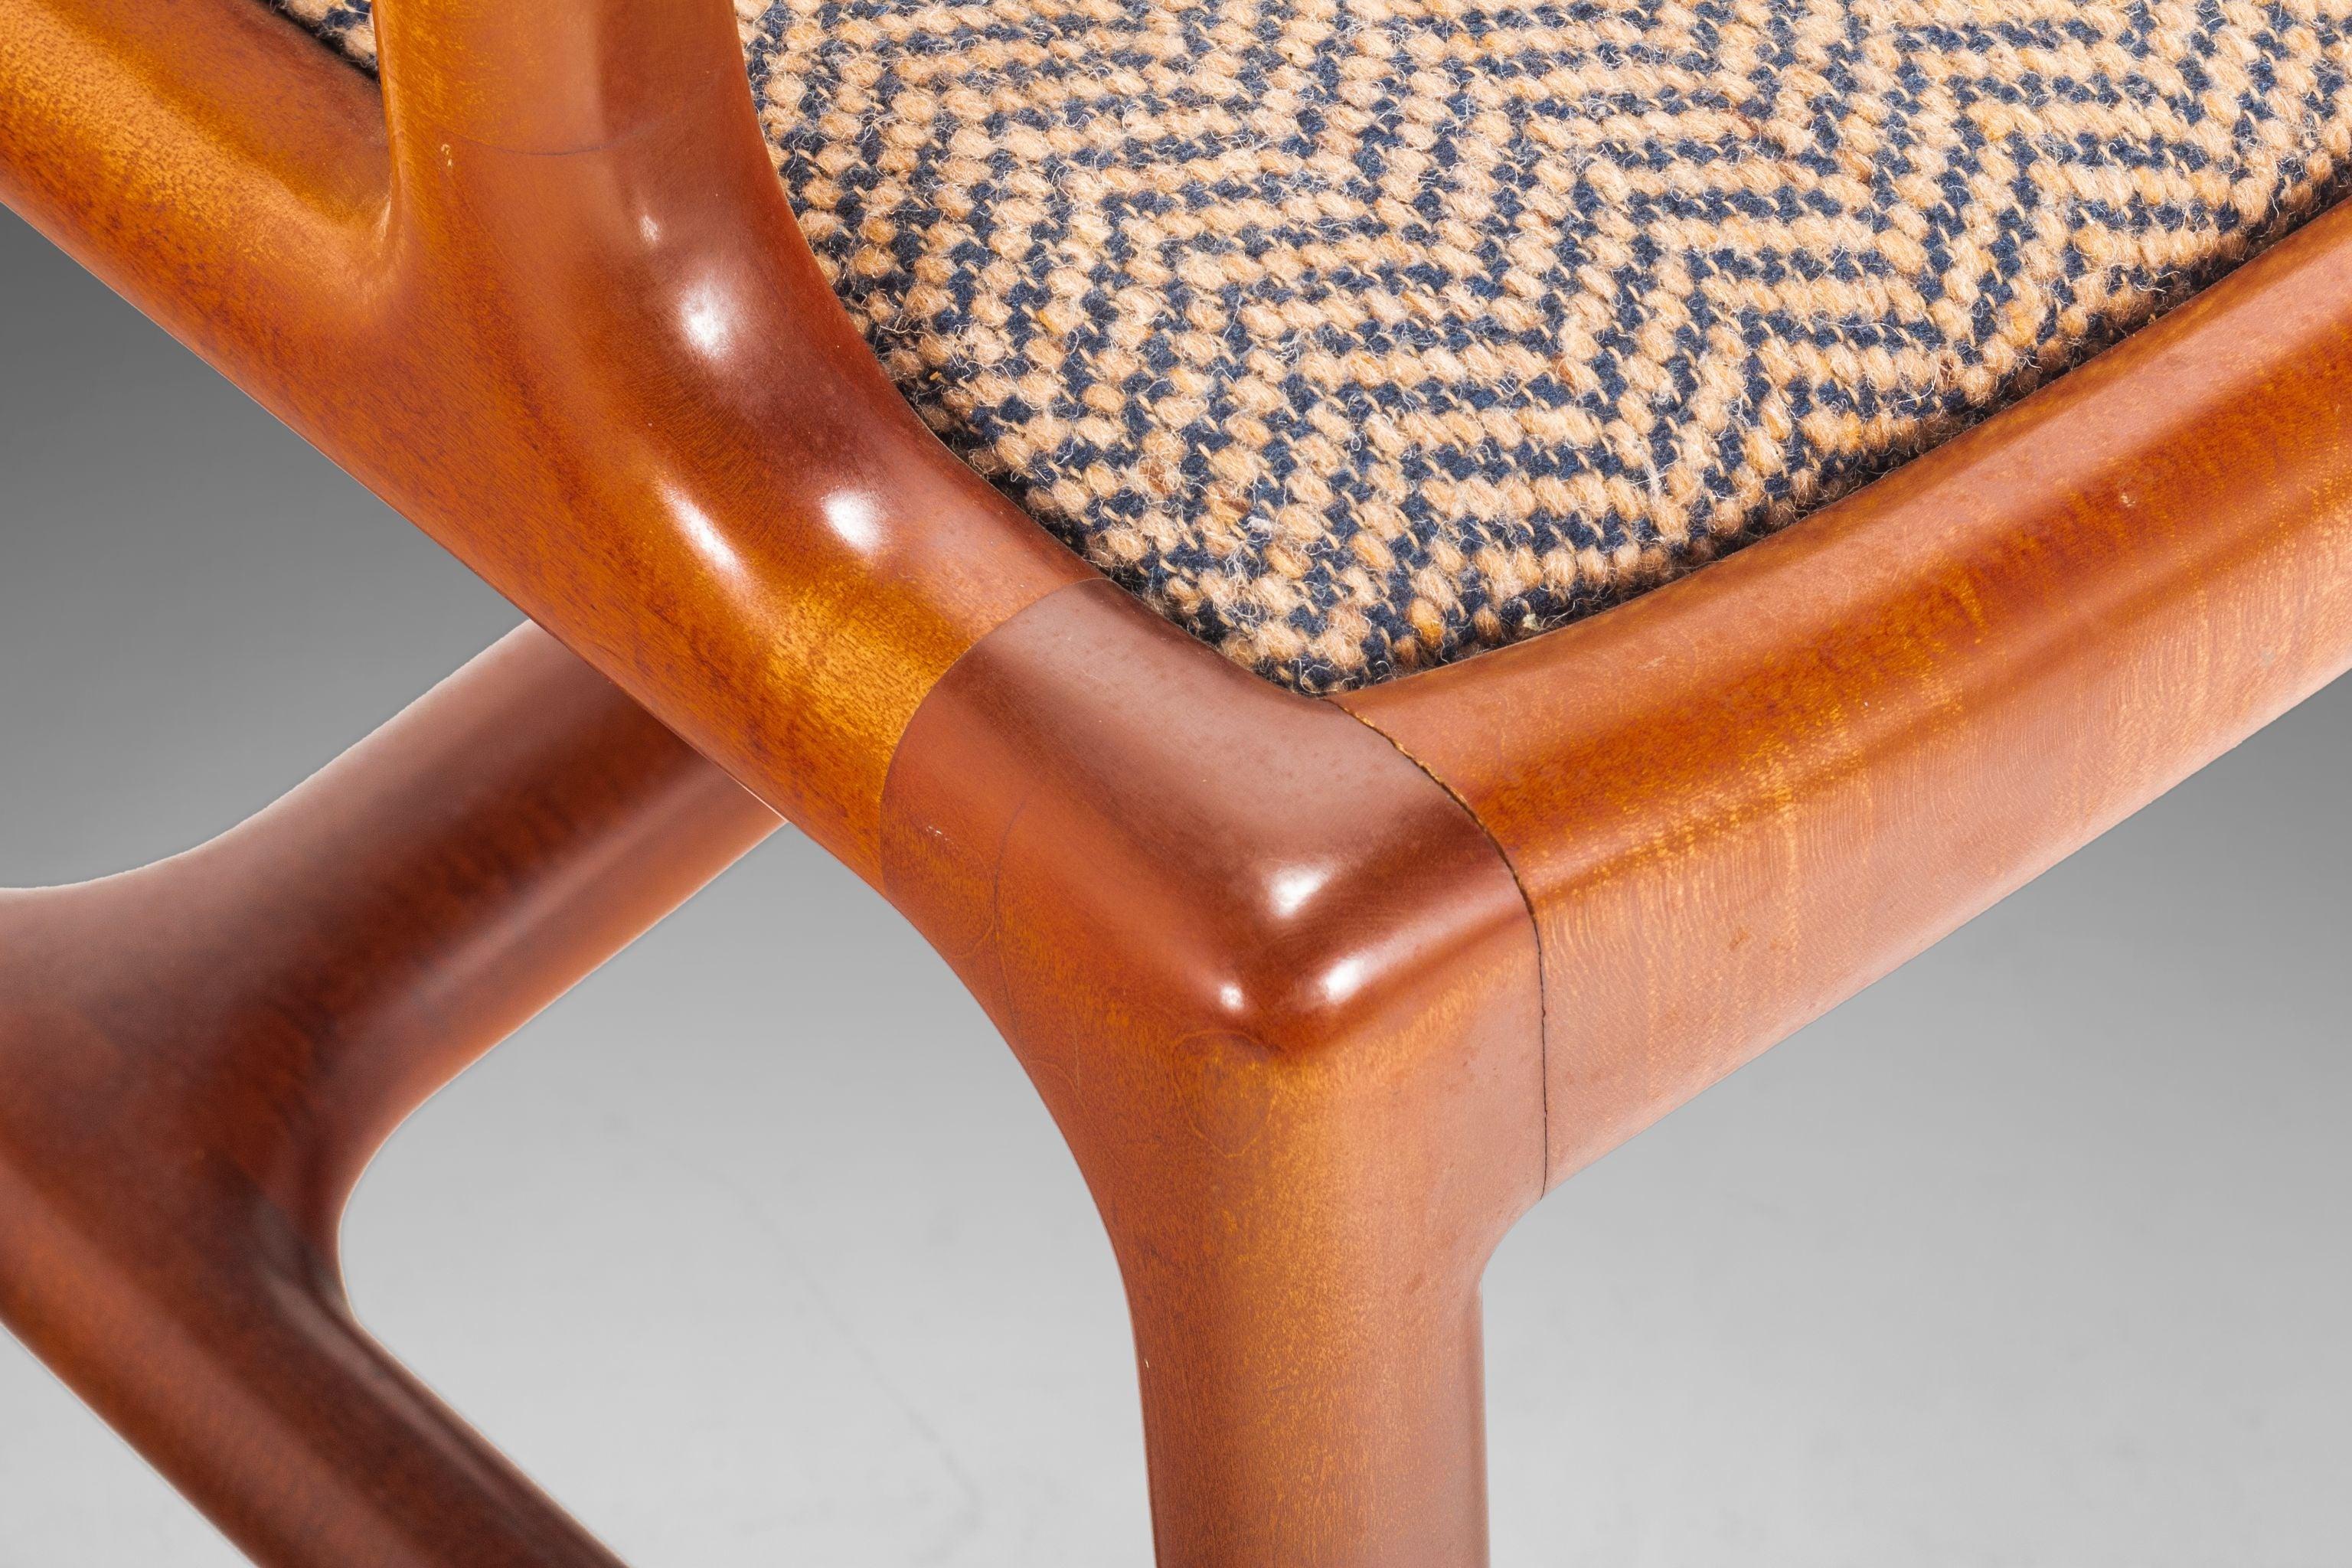 Cet ensemble de chaises bretzels aux formes ludiques ne ressemble à aucun autre que nous ayons jamais vu. Fabriqués en chêne massif, recouverts d'un tissu tweed original aux jolis motifs géométriques et dotés d'un assemblage complexe sans soudure,